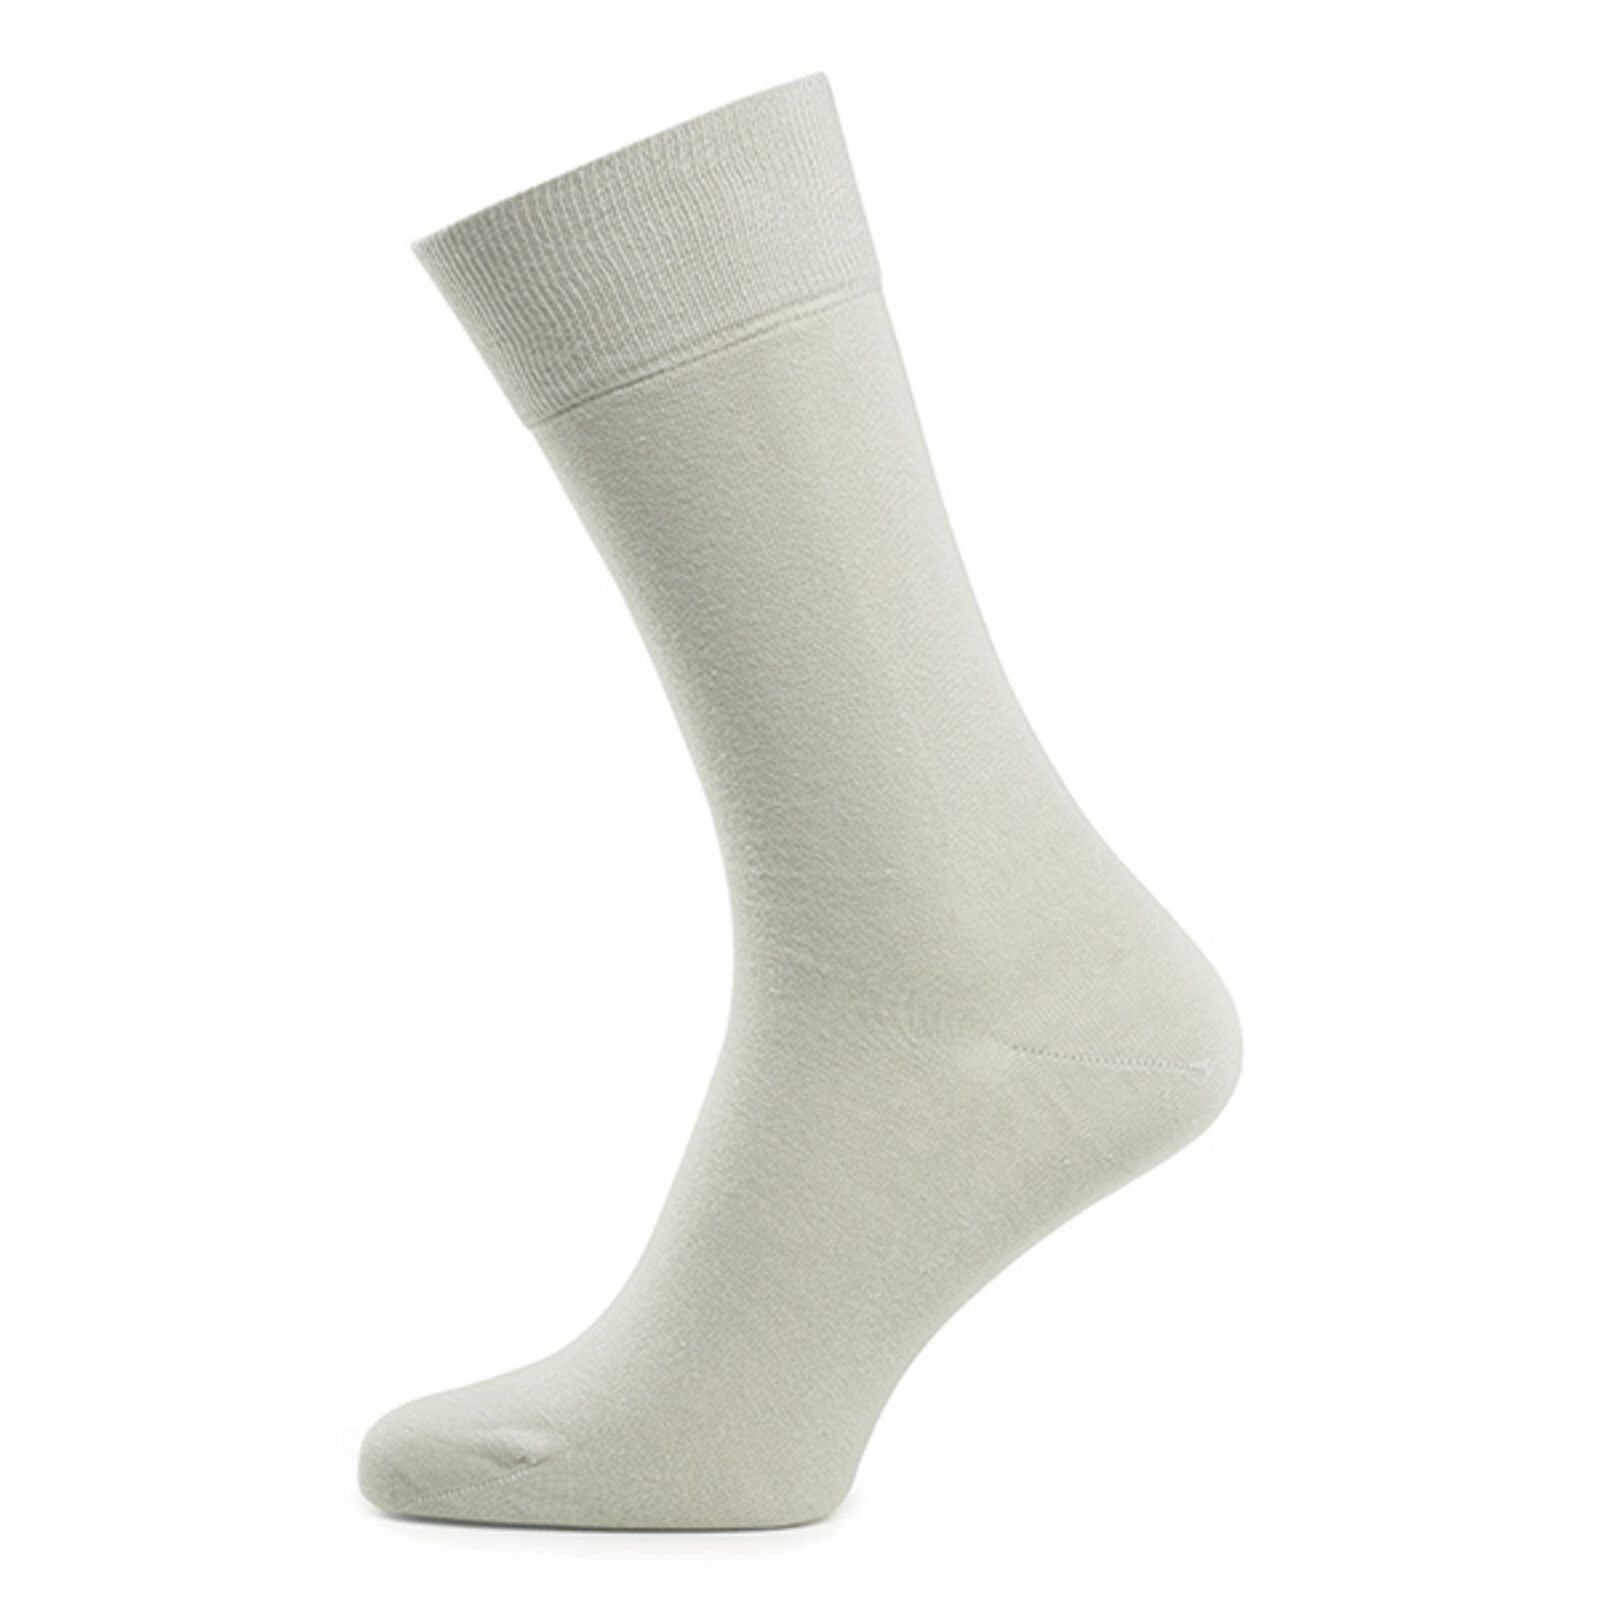 Carlo Lanza Sand one size cotton socks (private label)